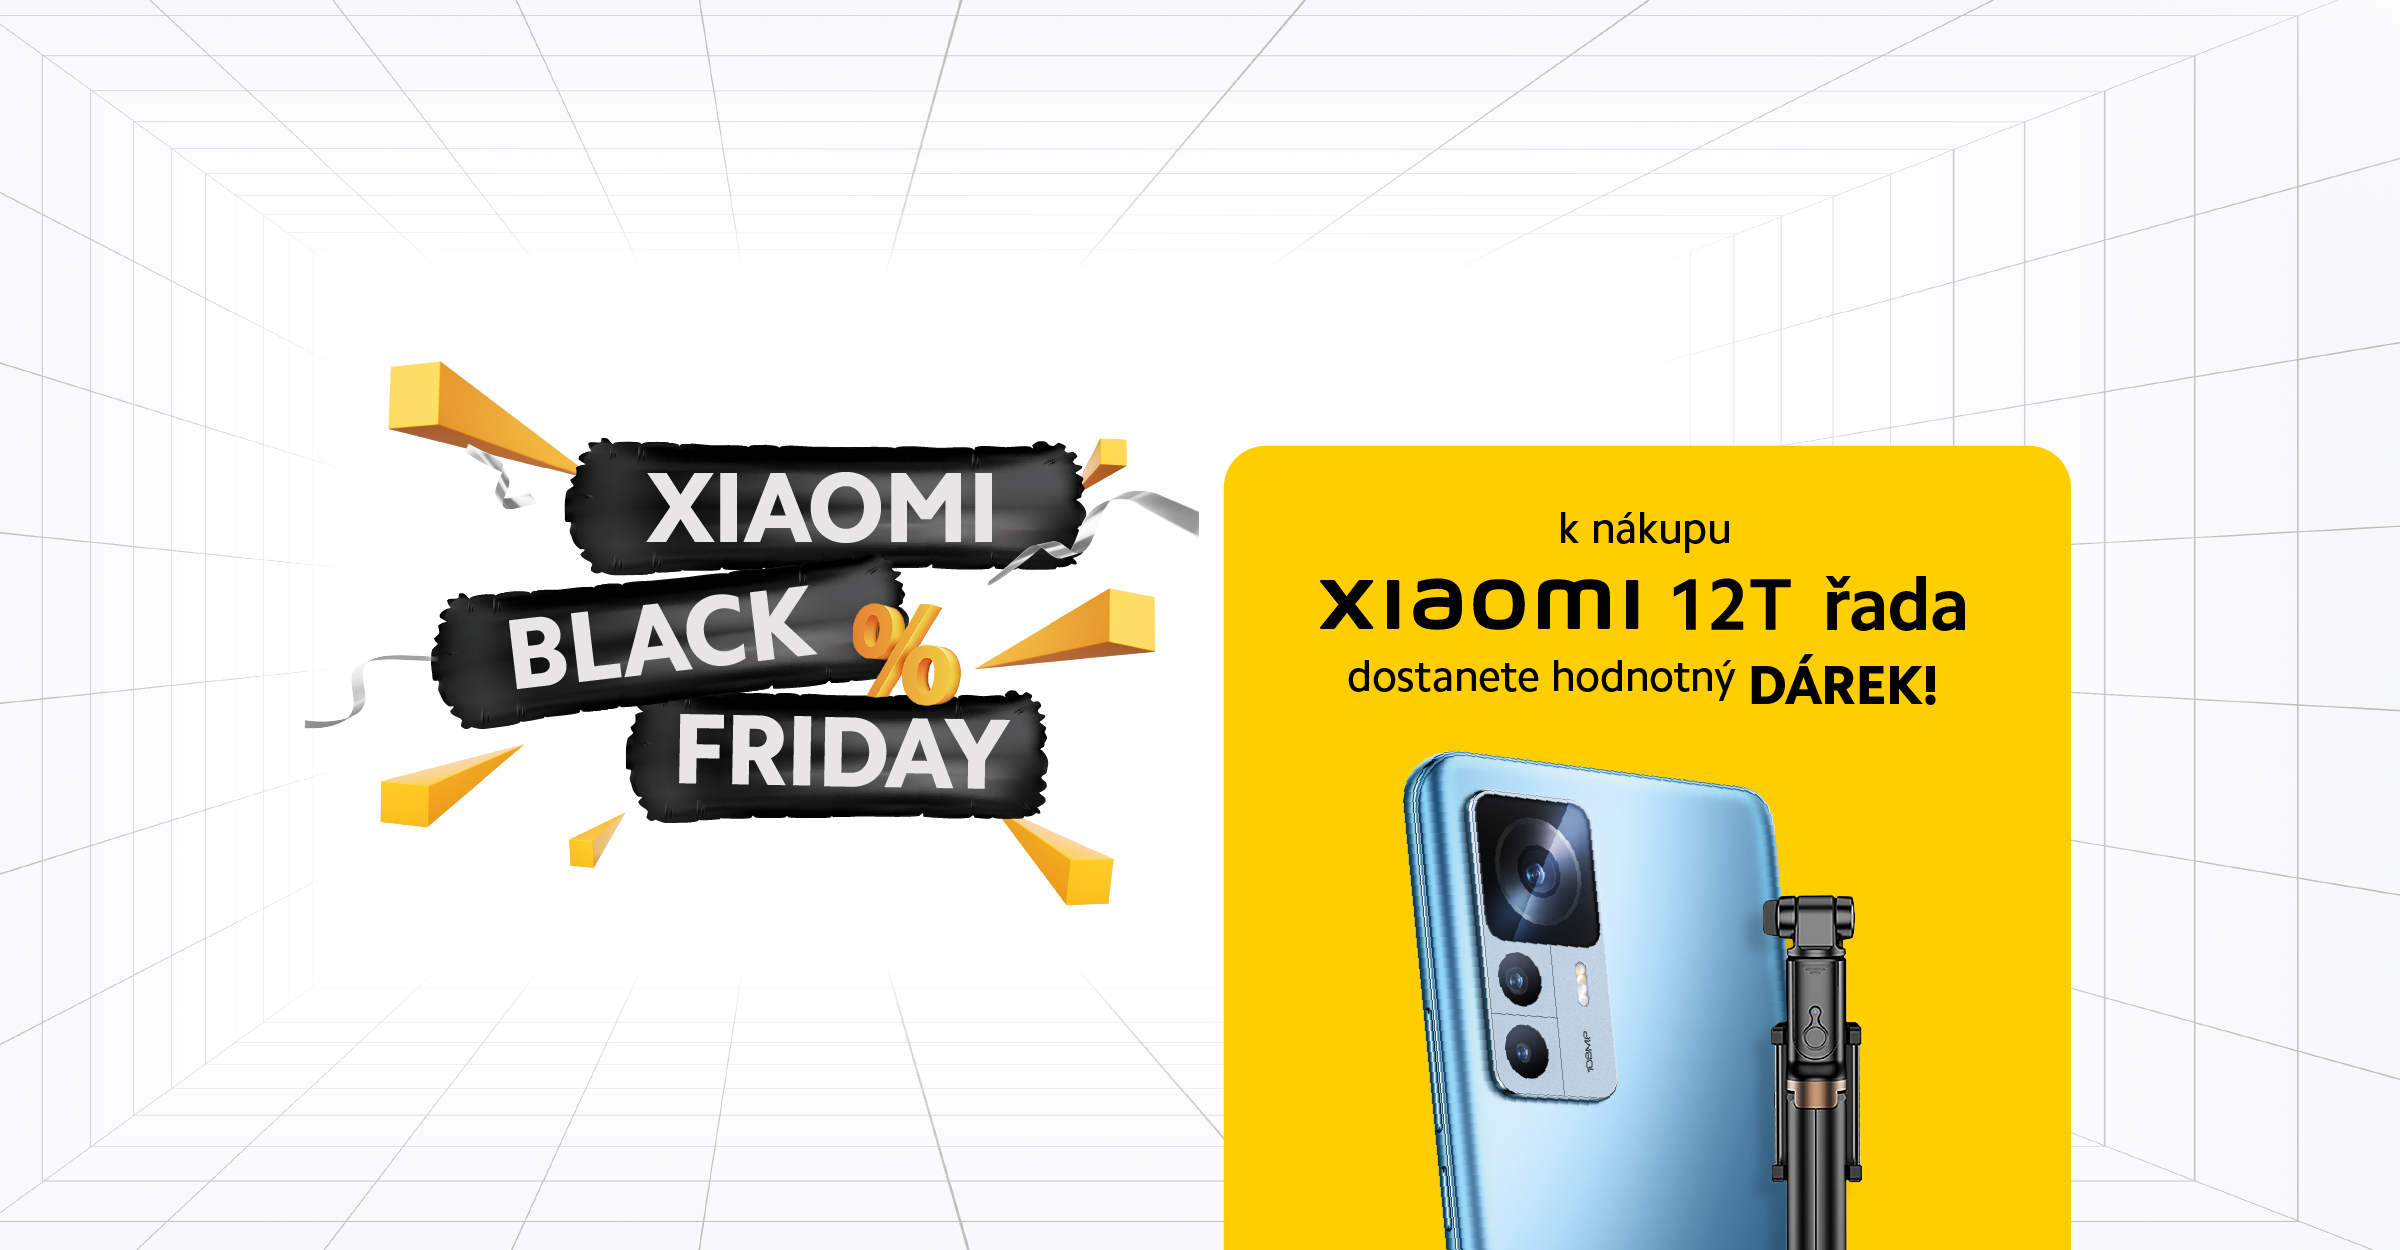 Black Friday startuje v Xiaomi prodejnách!